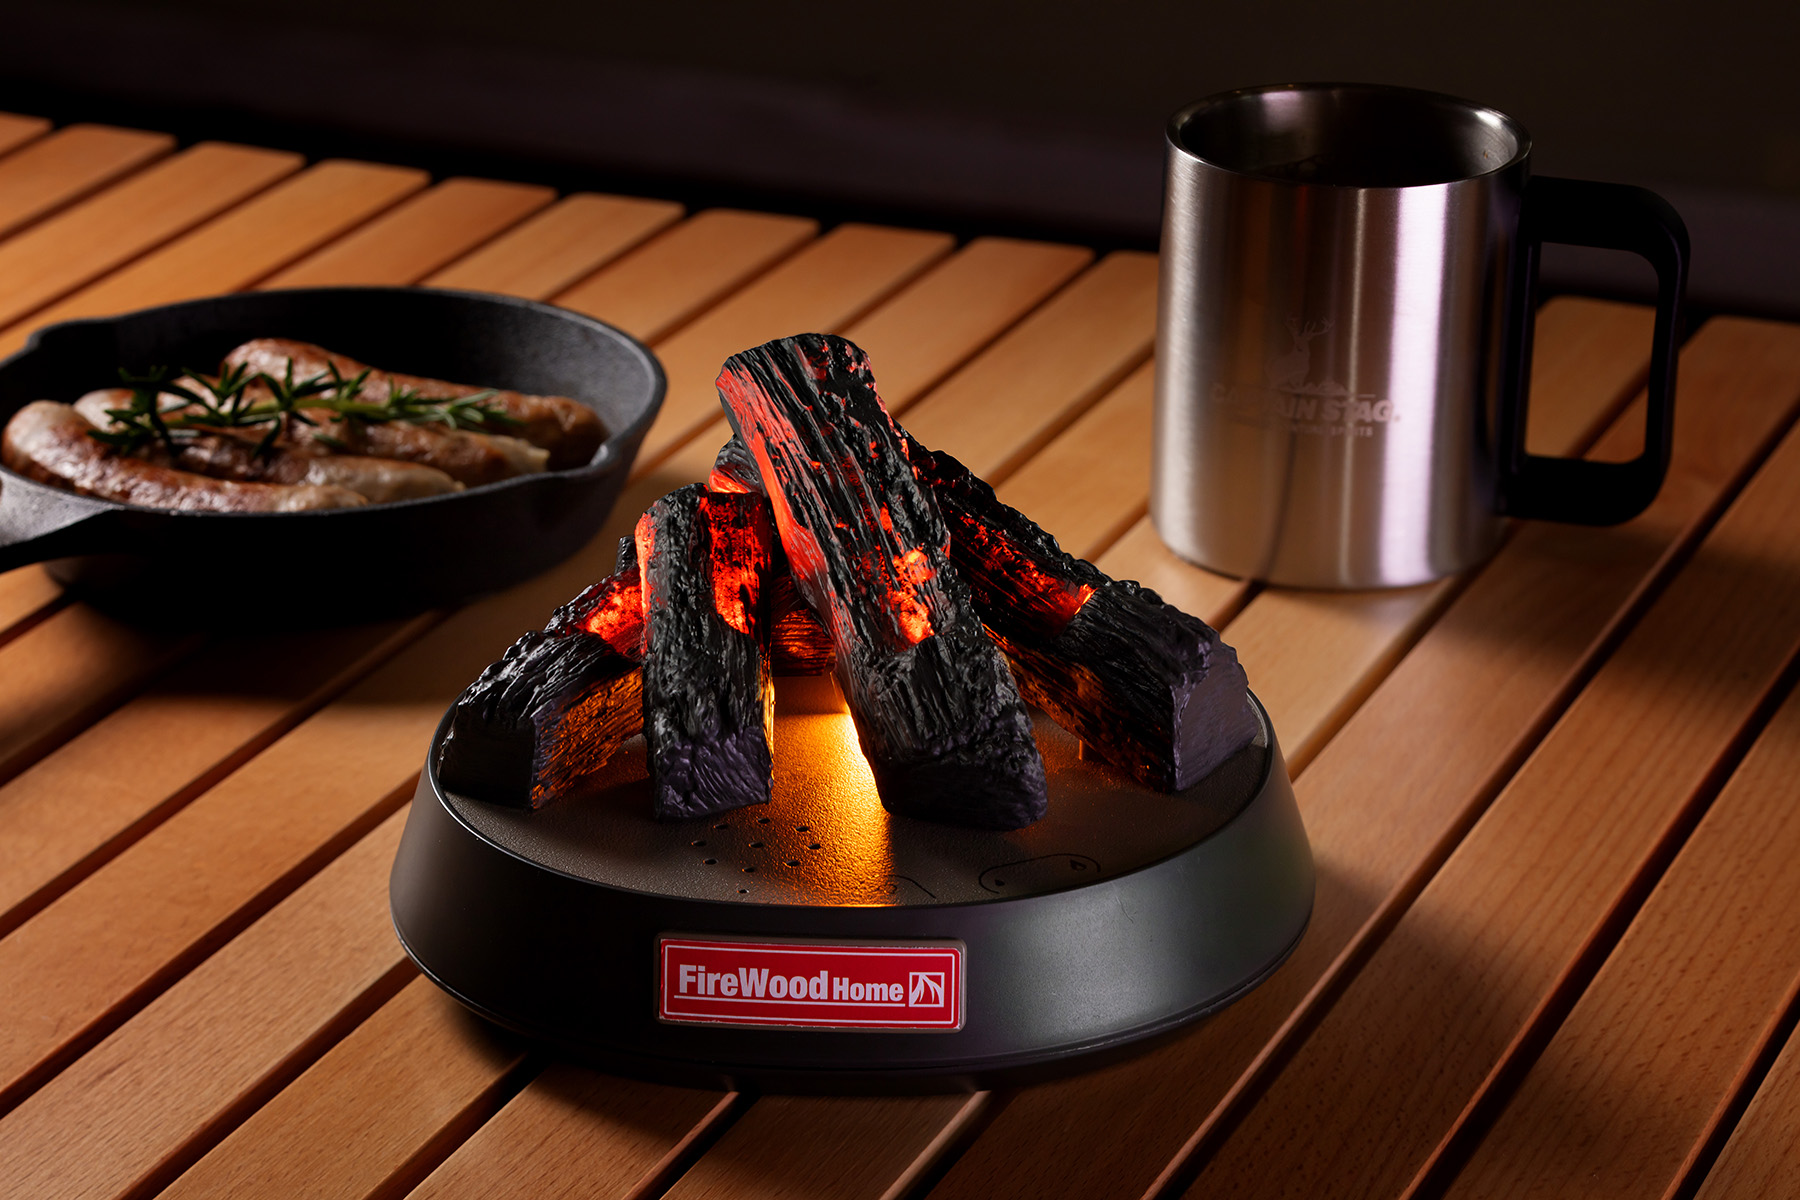 リアルな”たき火”のゆらぐ炎と音に癒される、たき火ガジェット「FireWood Home」2021年7月発売 – おもちゃのニュース – toymim